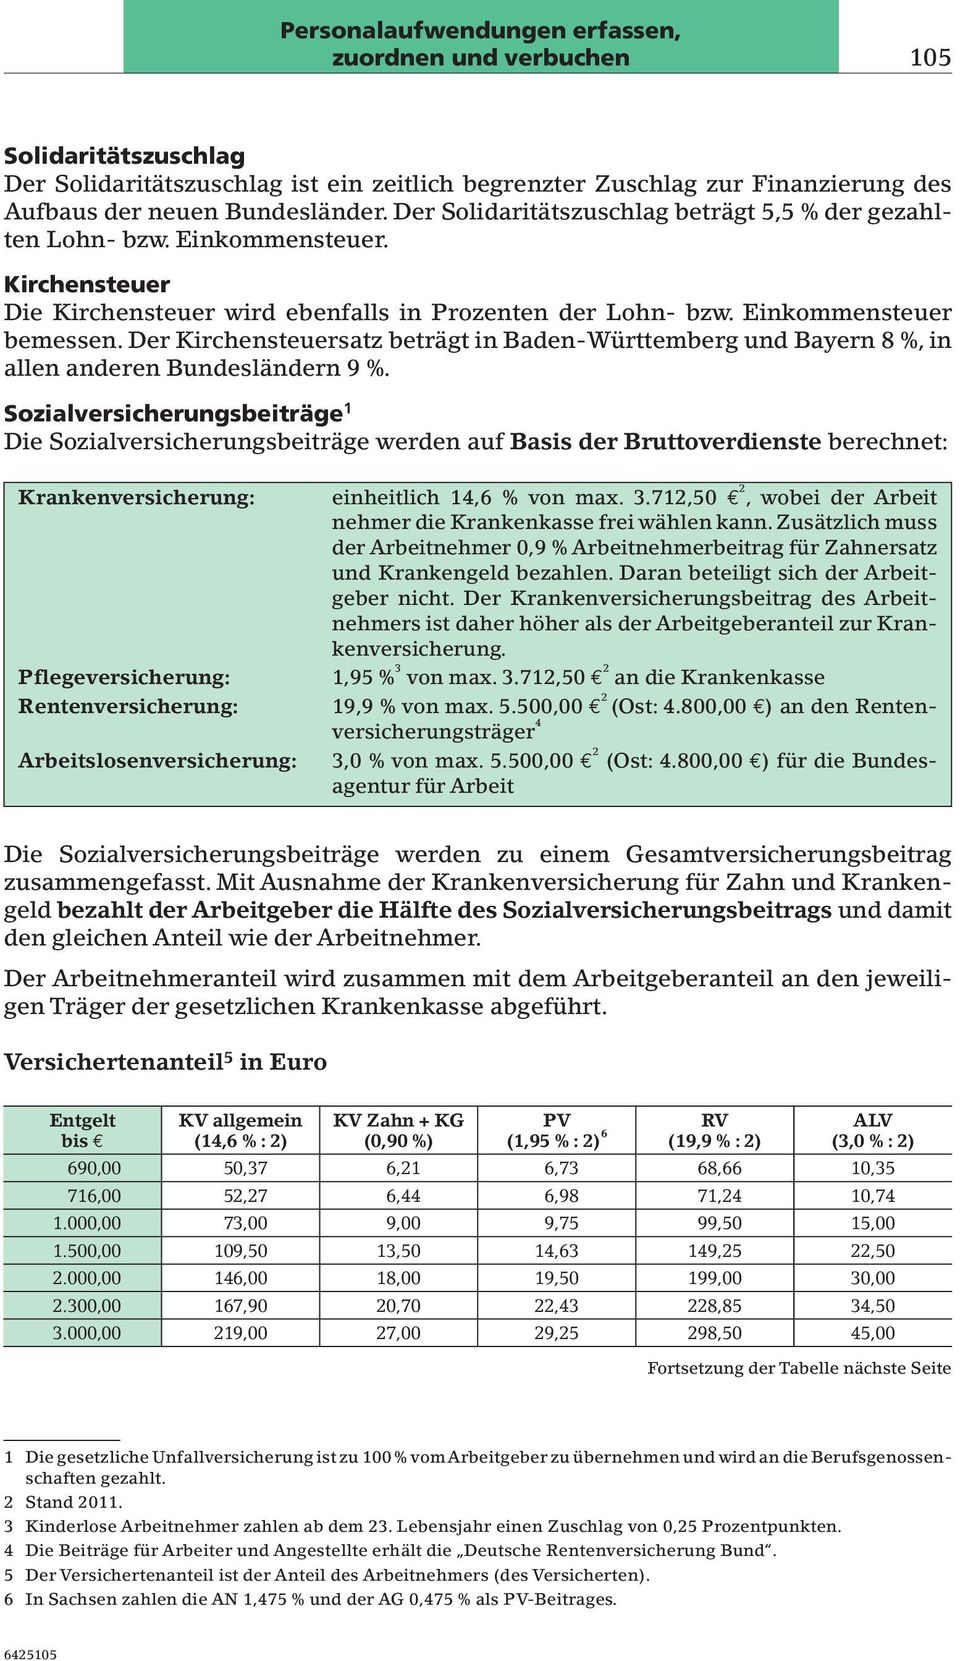 Einkommensteuer bemessen. Der Kirchensteuersatz beträgt in Baden-Württemberg und Bayern 8%, in allen anderen Bundesländern 9%.